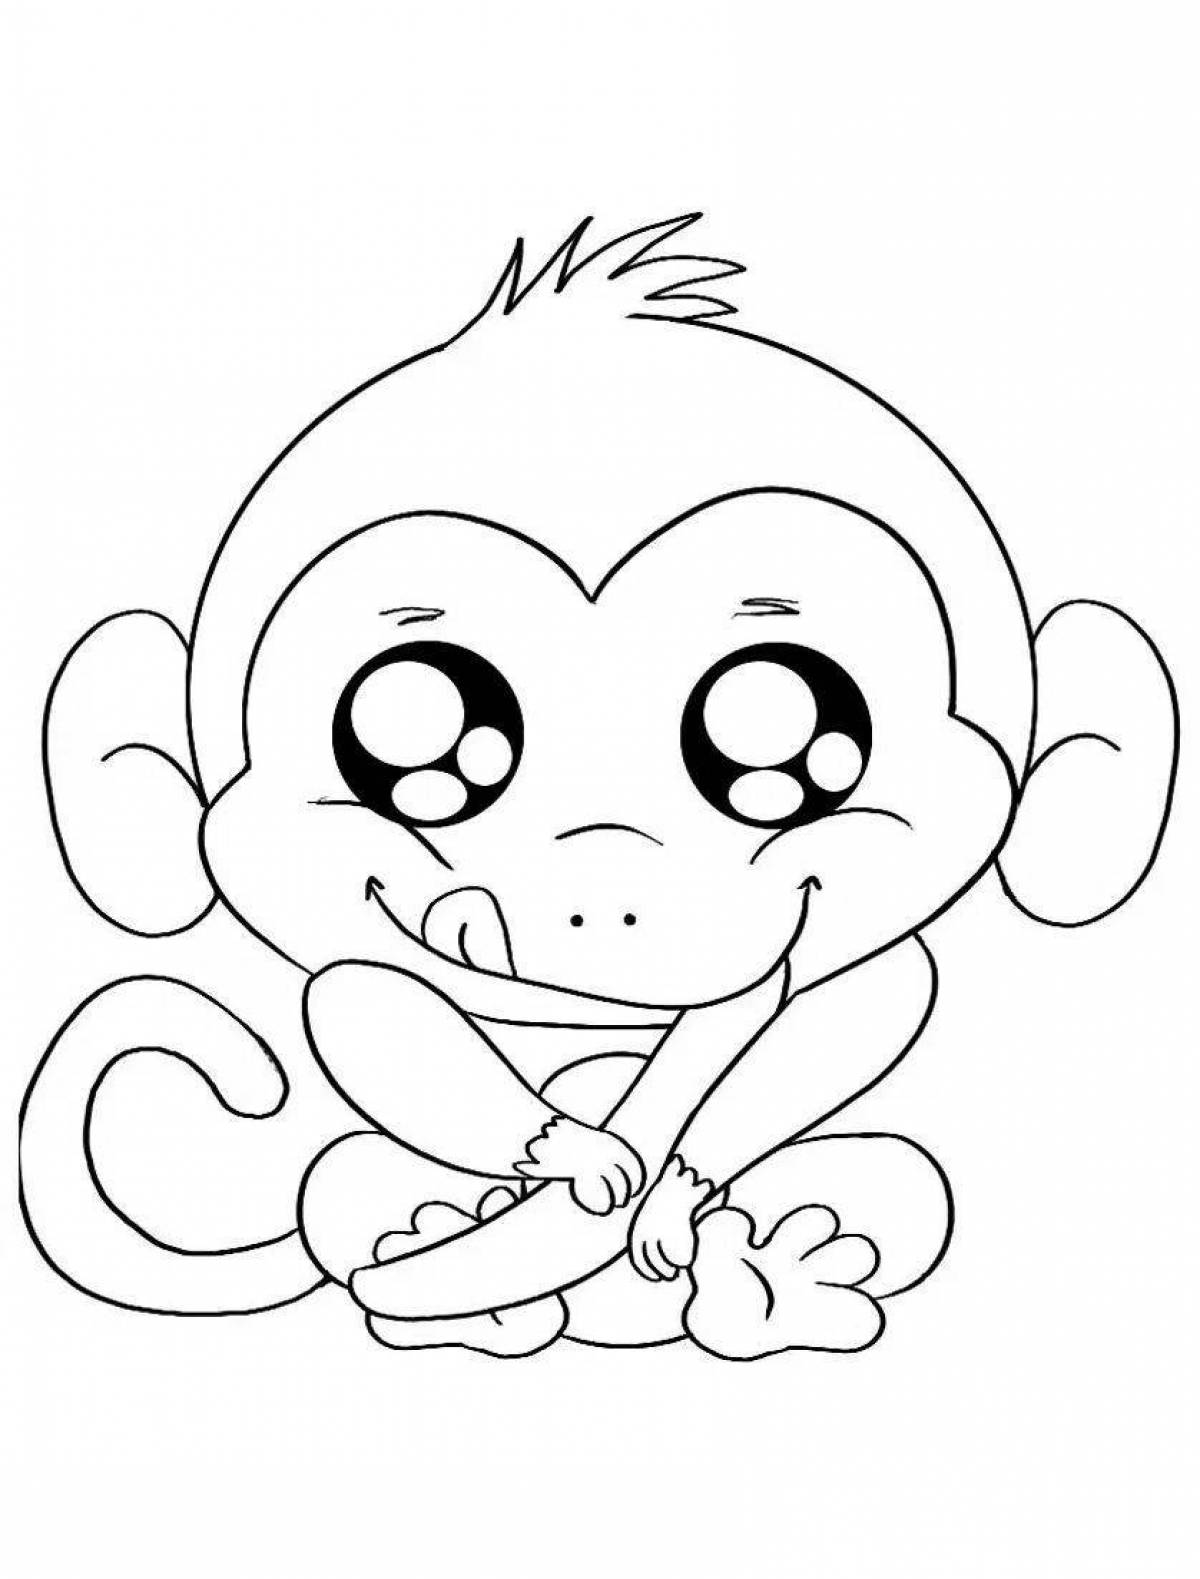 Забавная раскраска обезьяна